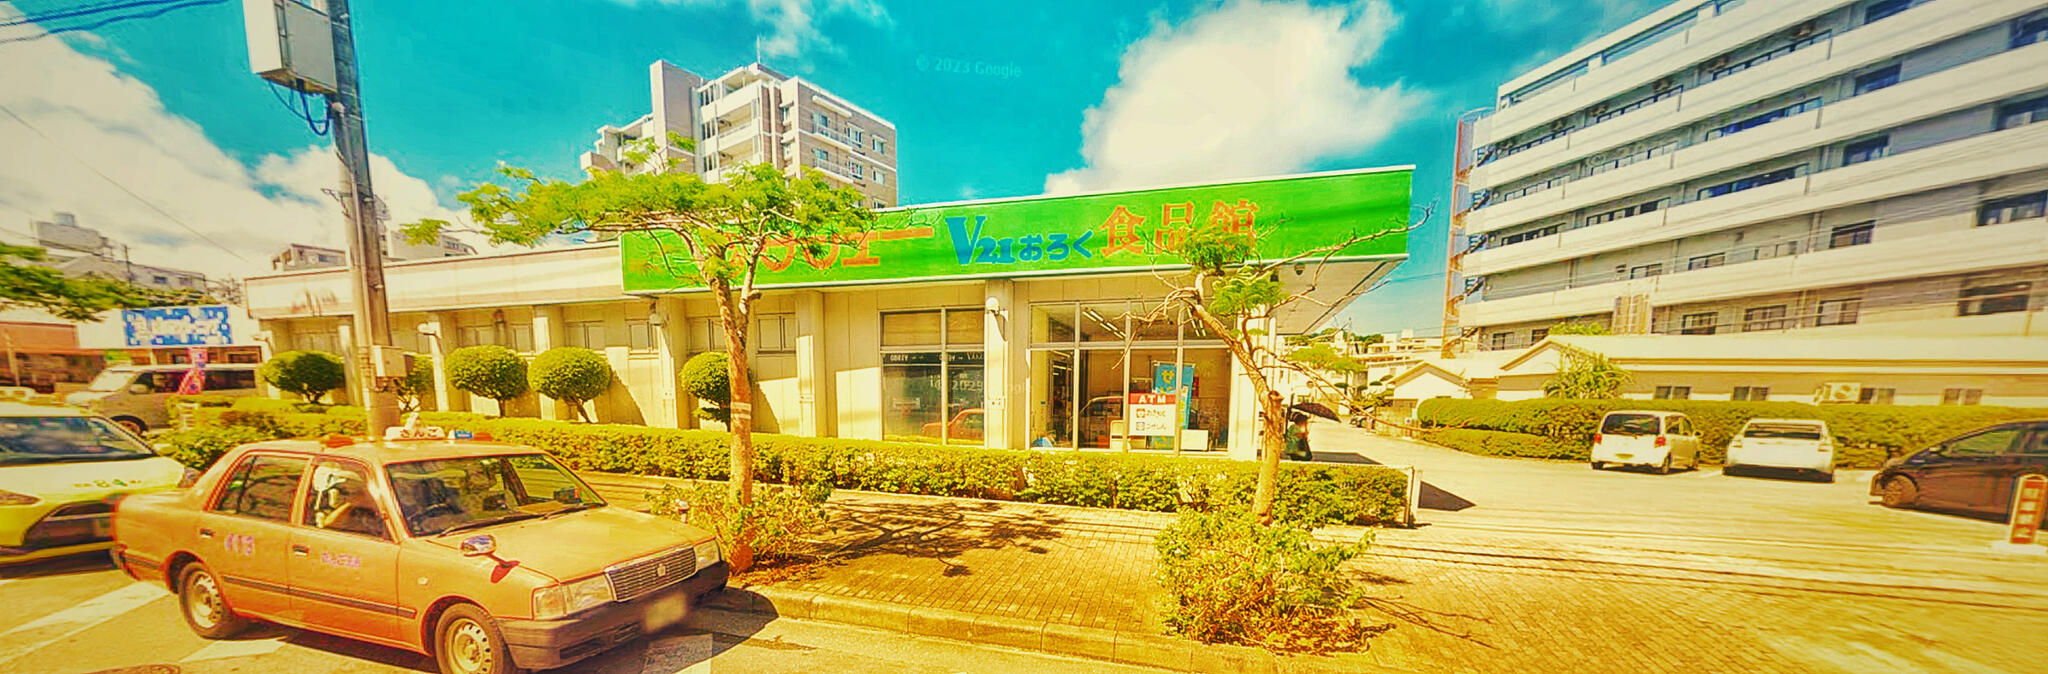 サンエー V21食品館 小禄店の代表写真2